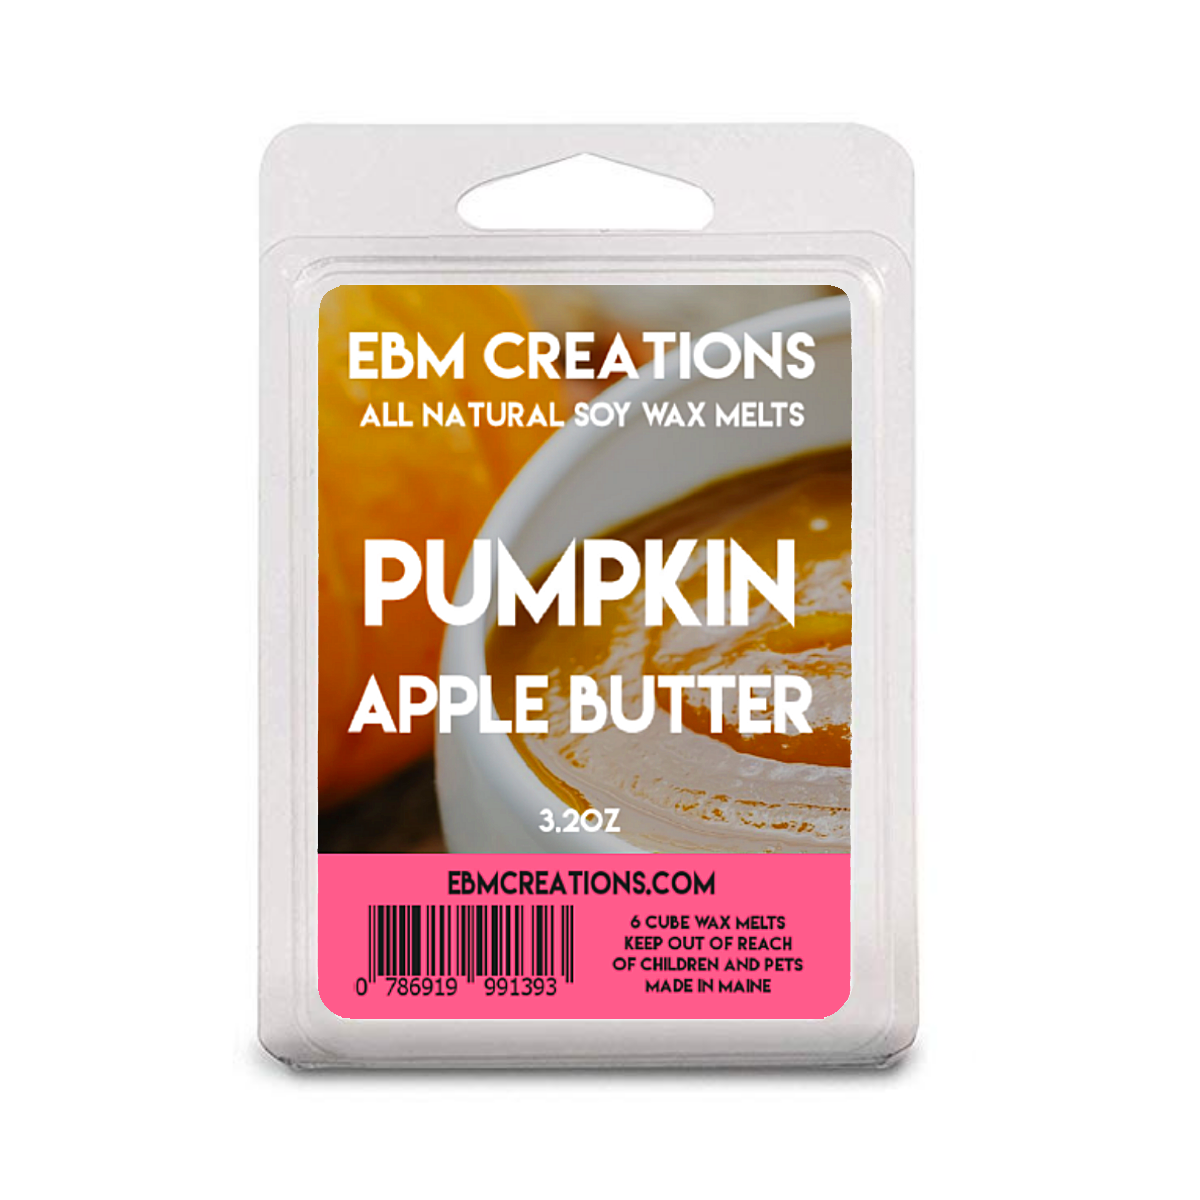 Pumpkin Apple Butter - 3.2 oz Clamshell